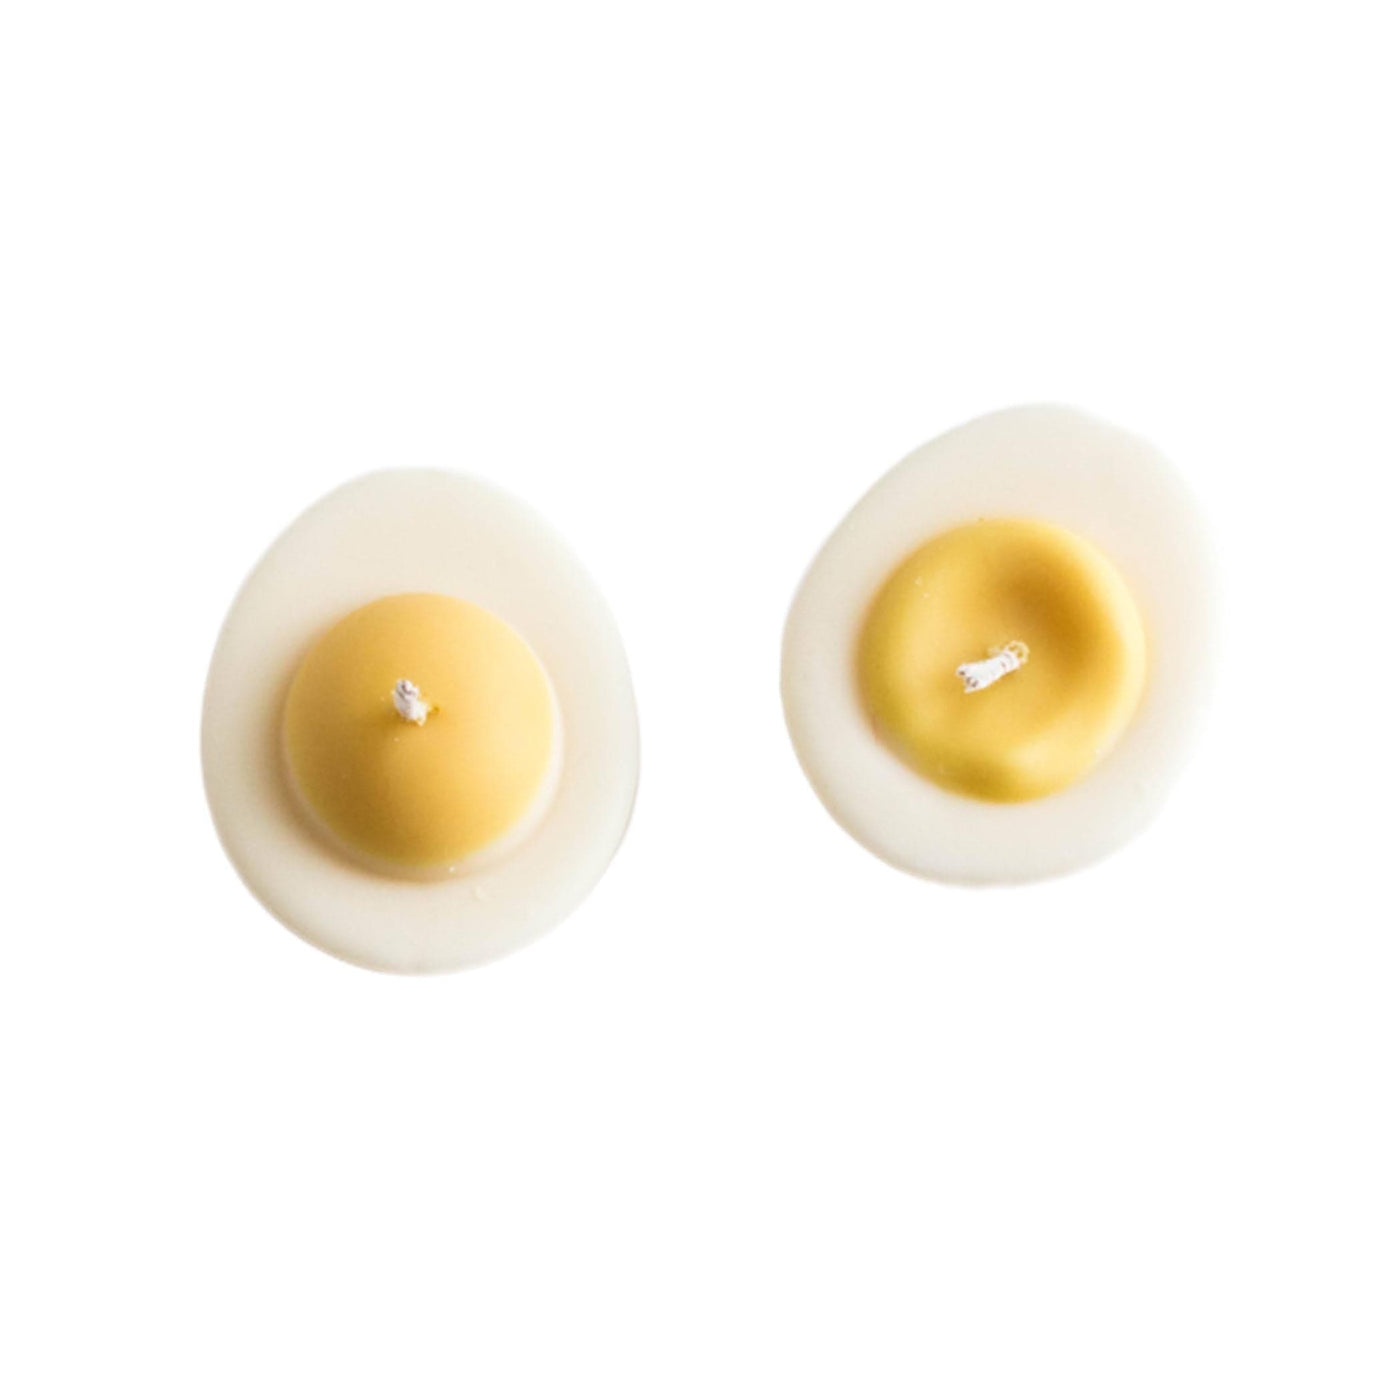 Laissez-vous séduire par la magie de ces bougies en forme d'œuf à la coque par Nata Concept Store, qui illuminent votre espace de leur lueur douce et réconfortante, créant ainsi une ambiance apaisante.